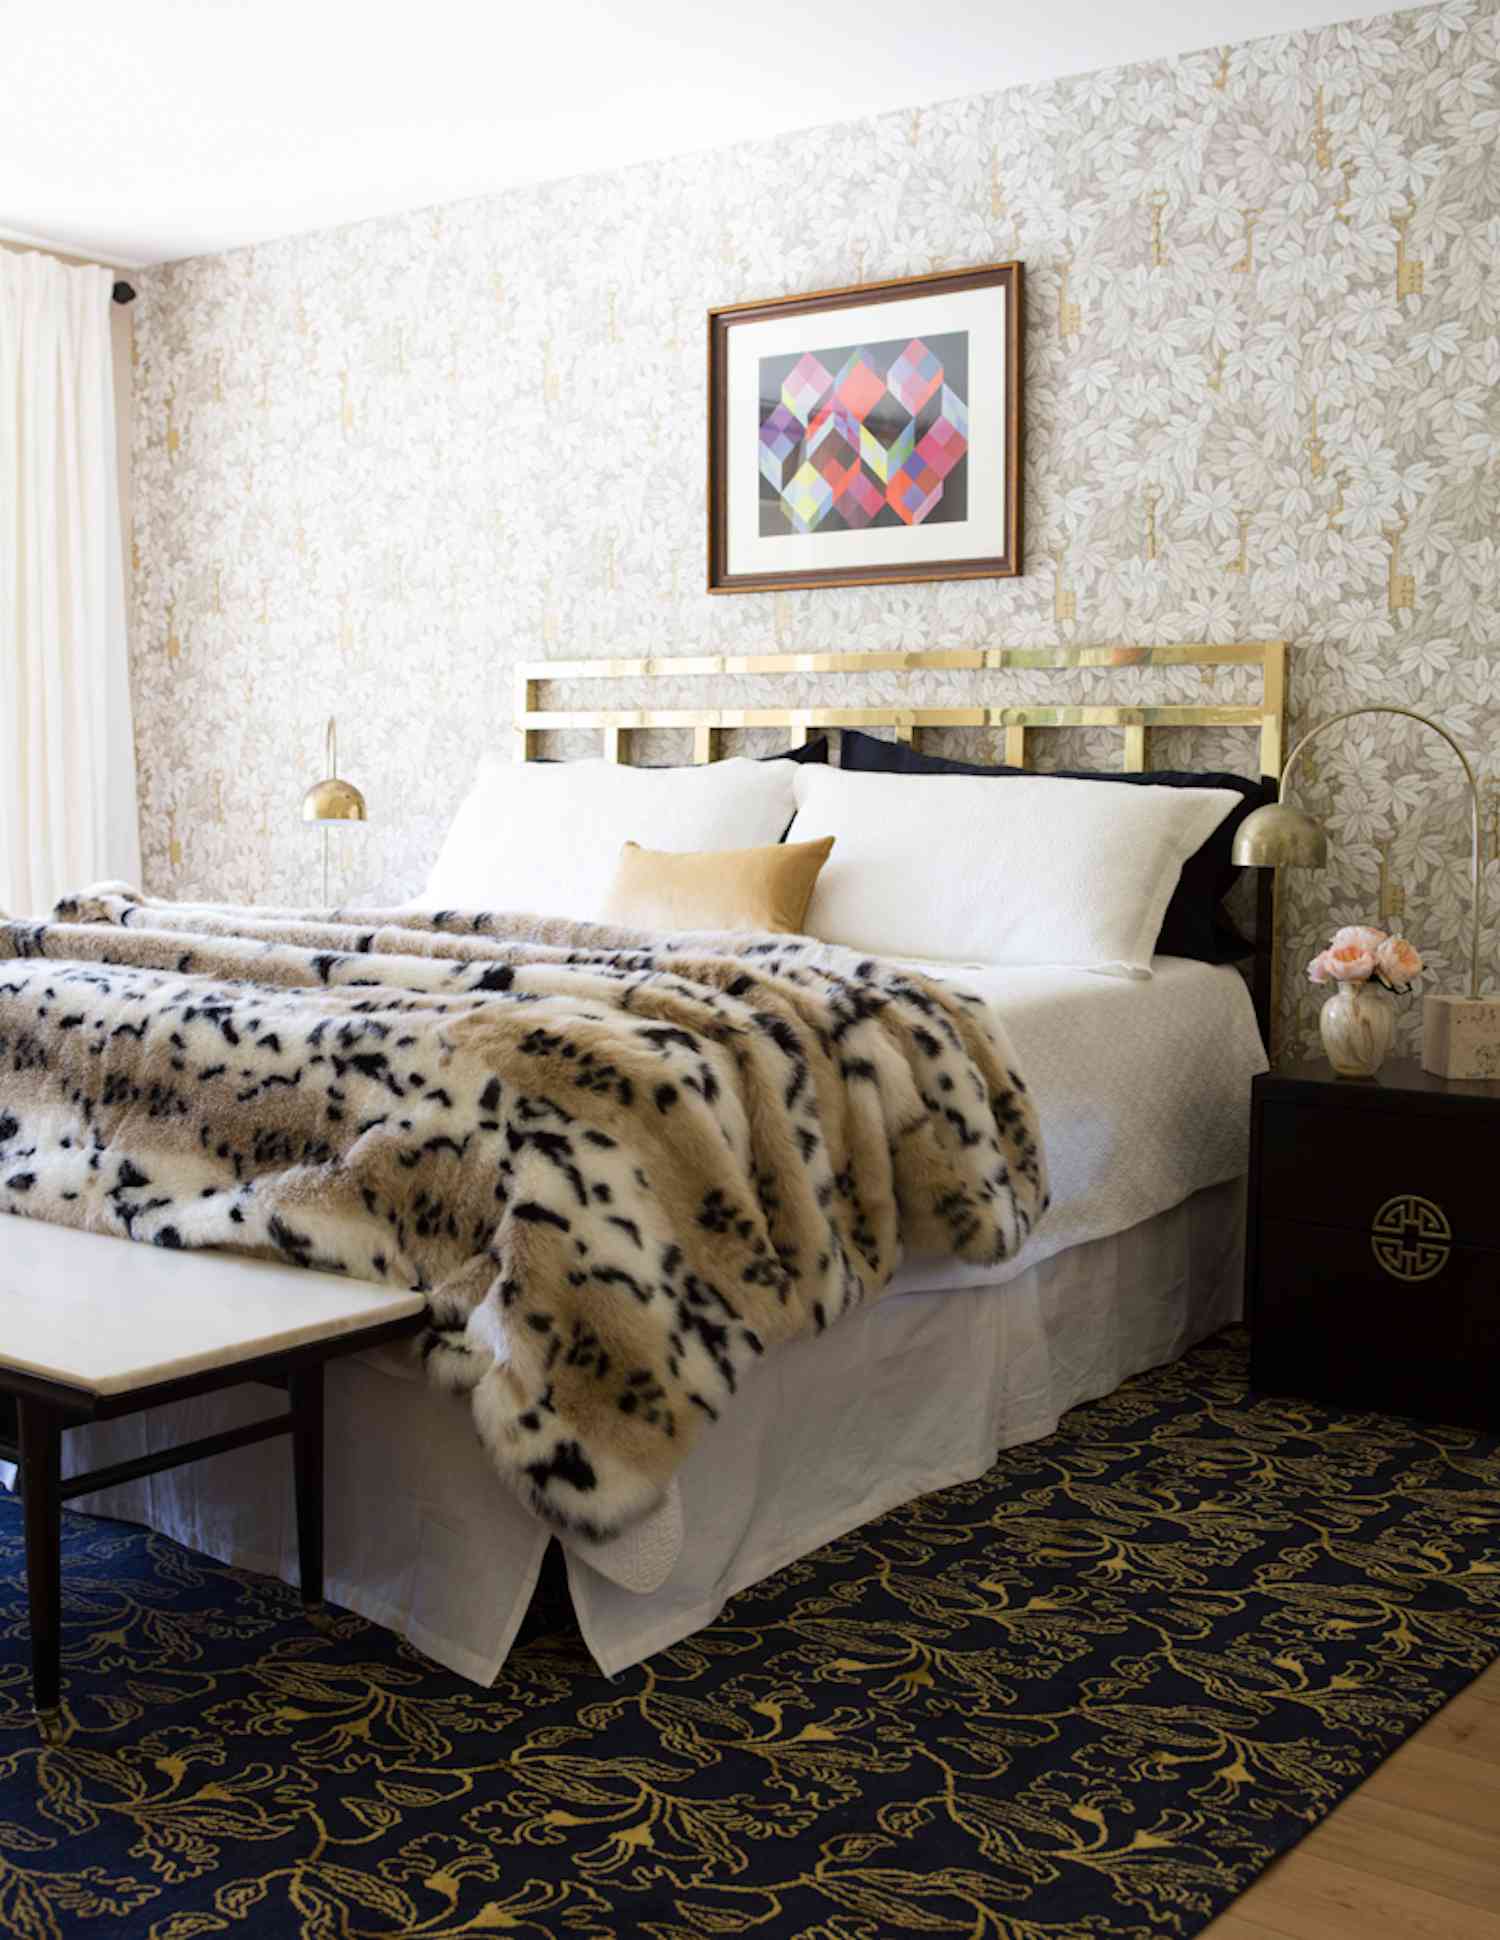 Modernes Schlafzimmer mit Pelzdecke im Leopardenmuster, goldenem Kopfteil, hellbraunen und beigen Akzenten, Glam